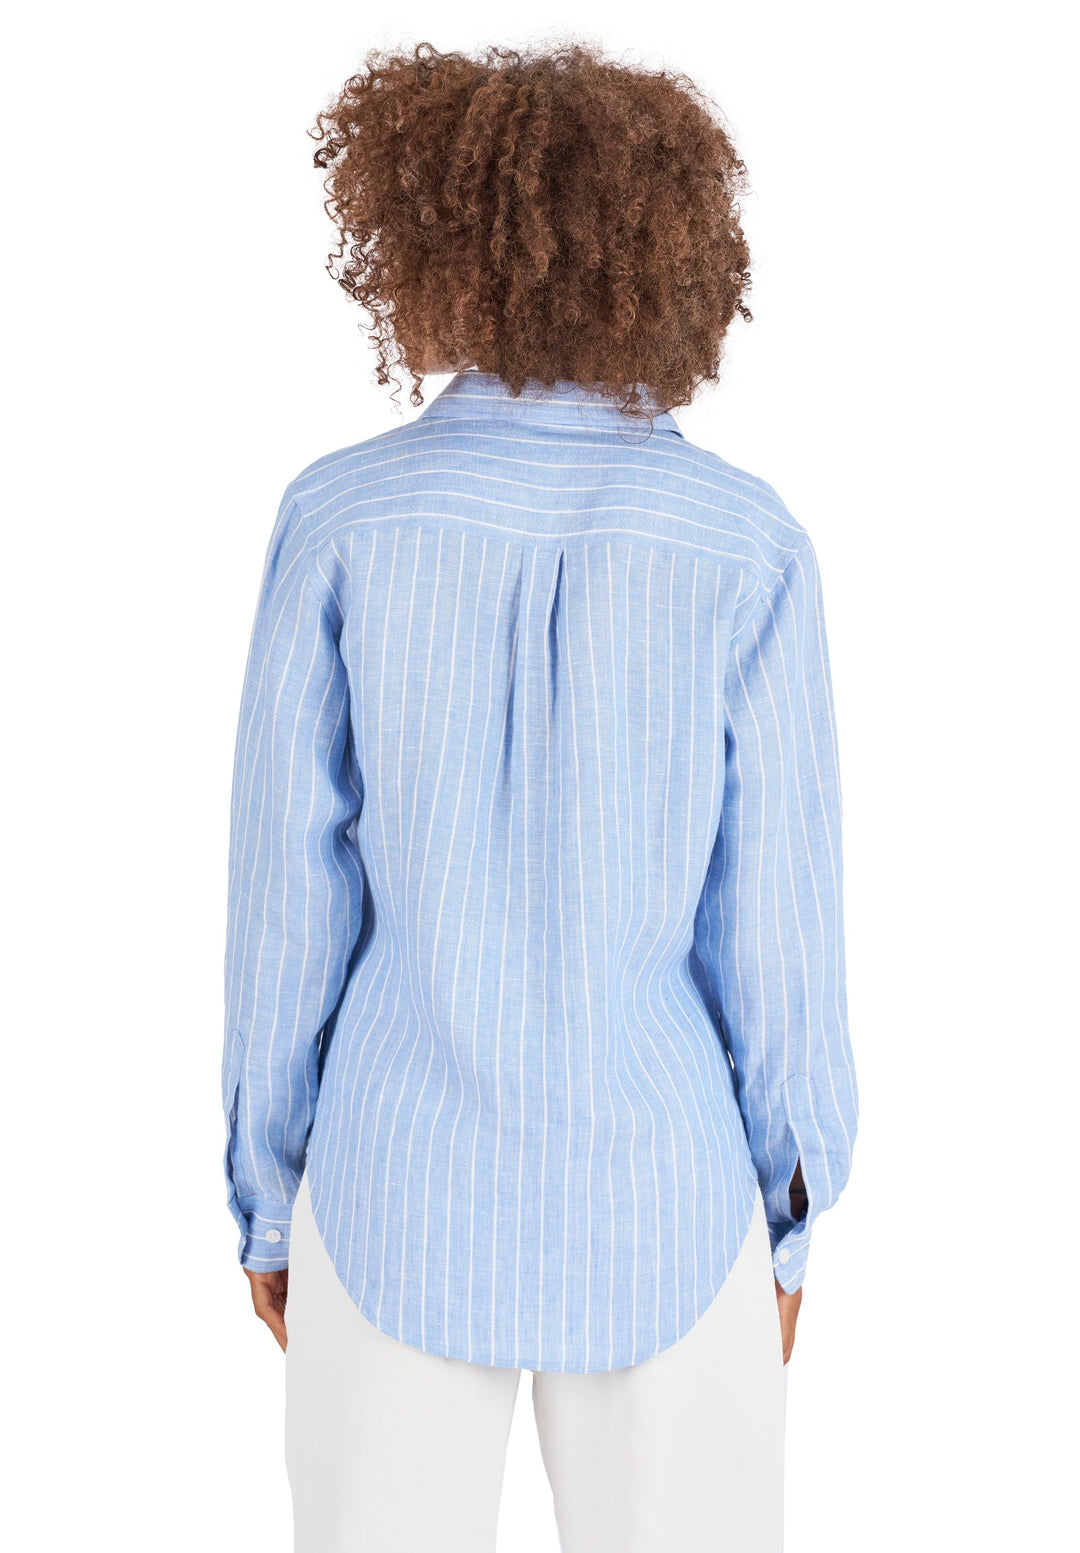 Iris Carolina Blue Stripes Relaxed Fit Linen Shirt